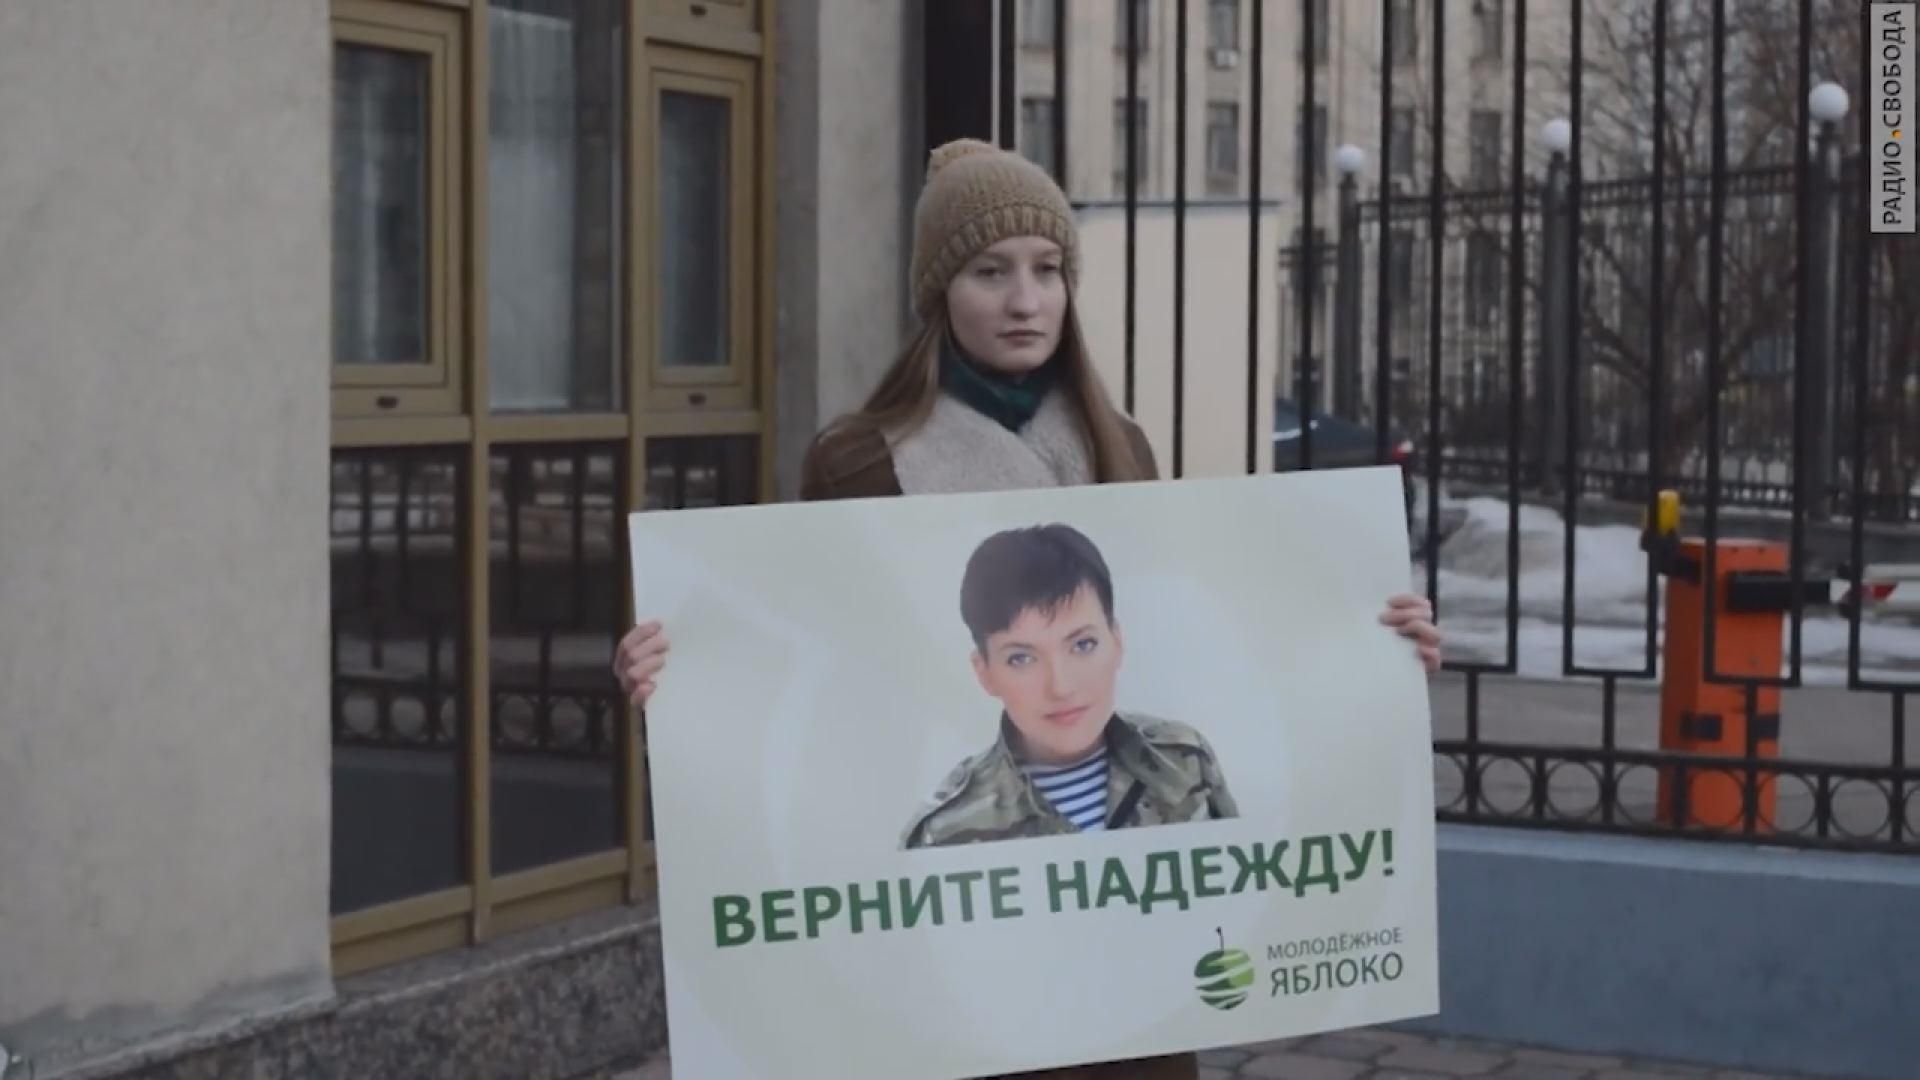 Российские активисты требовали освободить Надежду Савченко - 7 марта 2015 - Телеканал новин 24